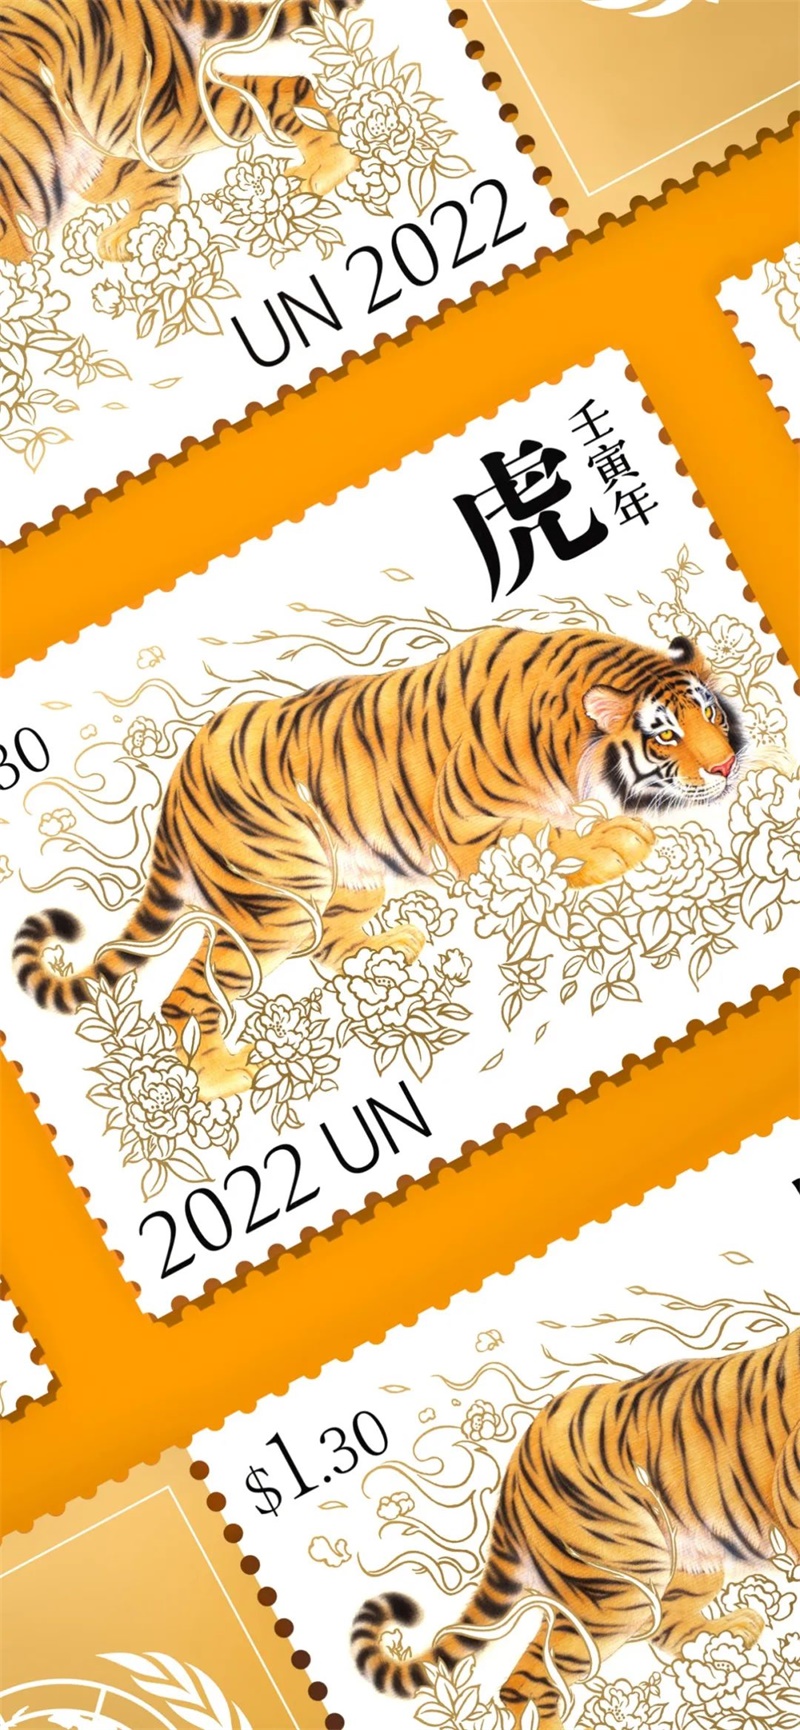 潘虎联合邮政署生肖虎年邮票设计